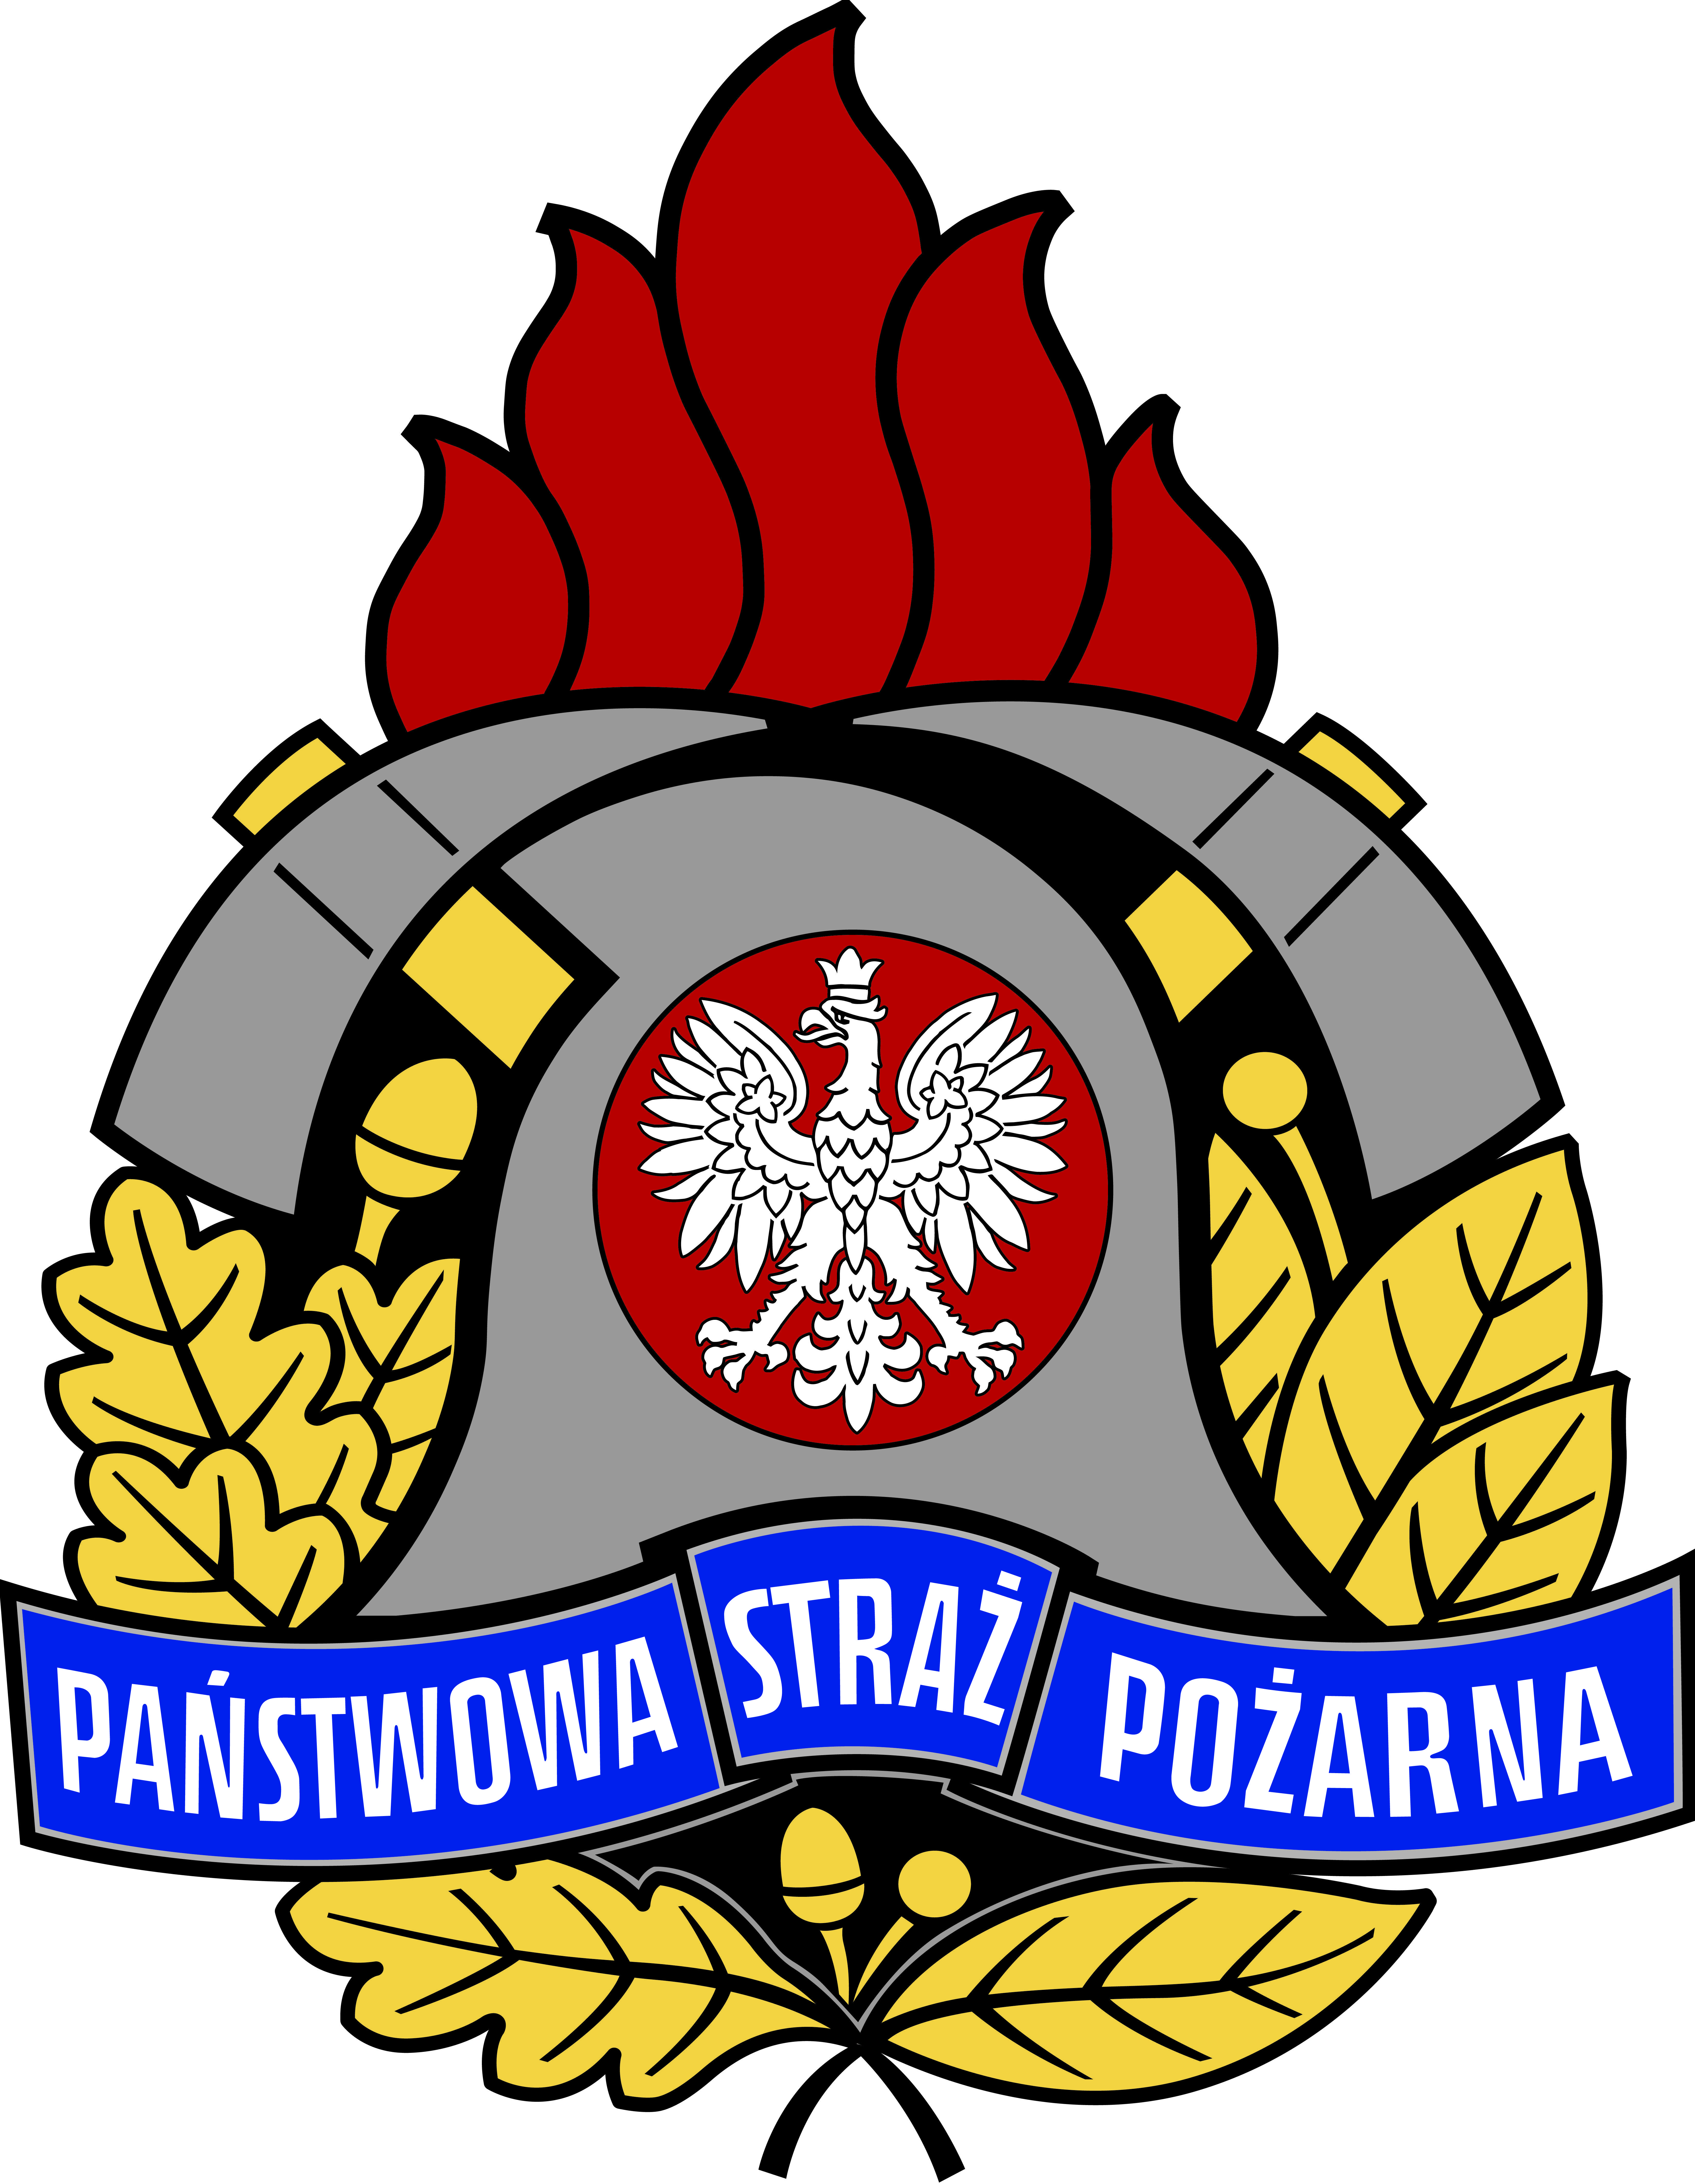 PSP Logo - Rewitalizacja logo Państwowej Straży Pożarnej - KW PSP w Warszawie